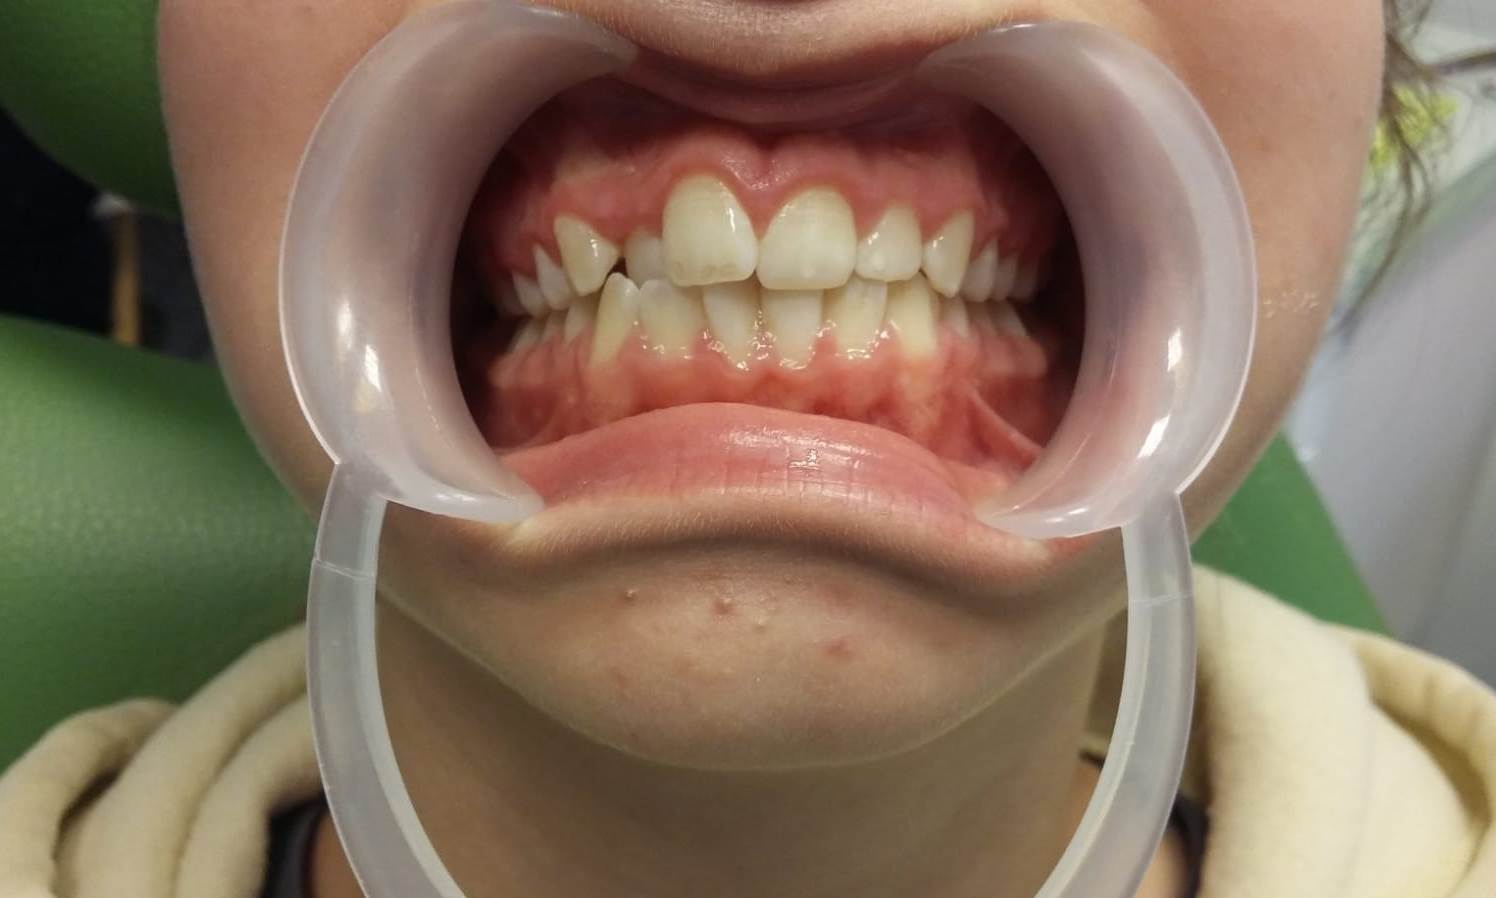 Pacjentka 2 przed leczeniem ortodontycznym expander